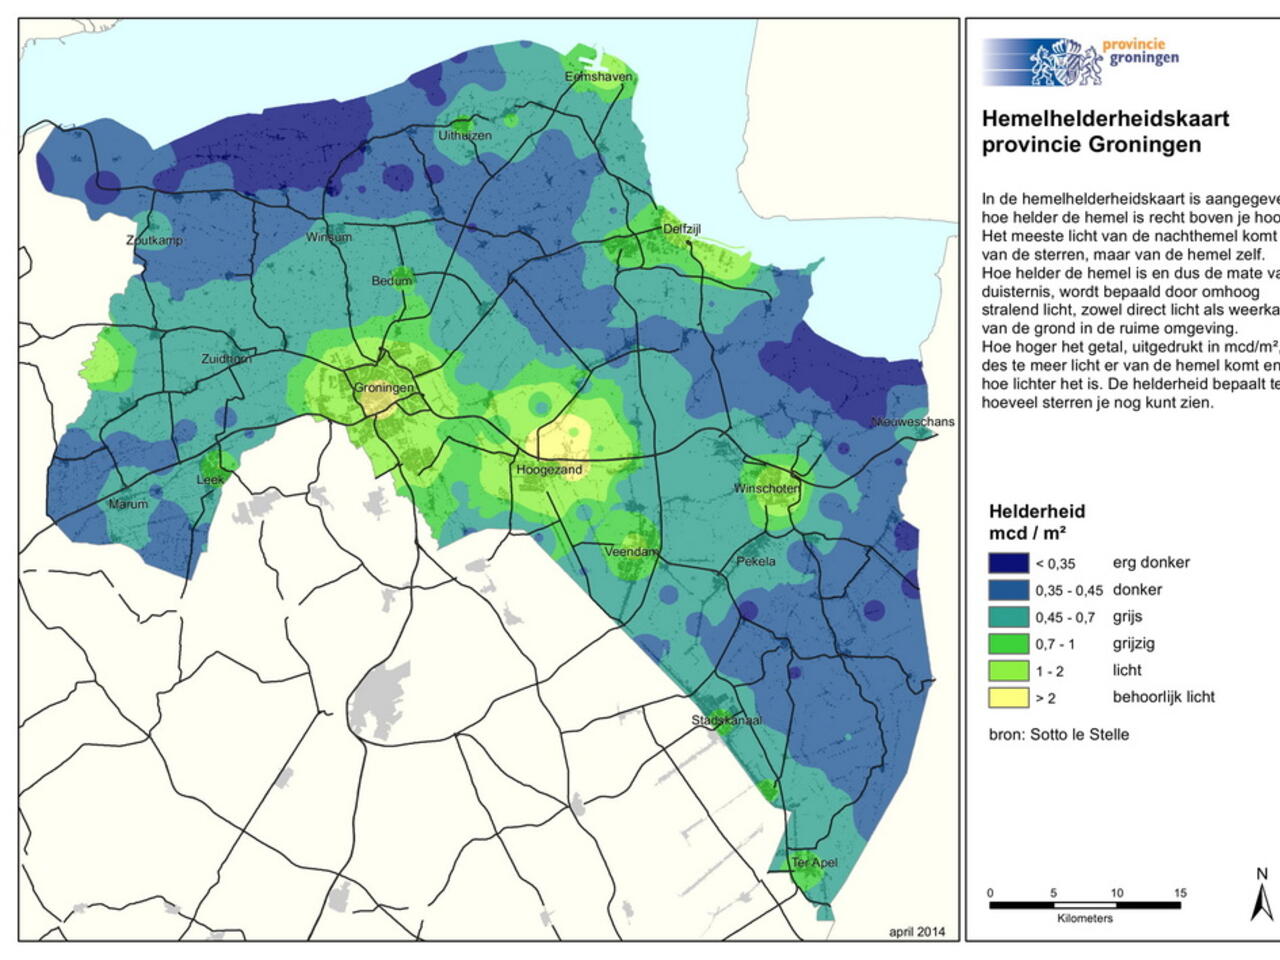 kaartje provincie groningen met lichtvervuiling